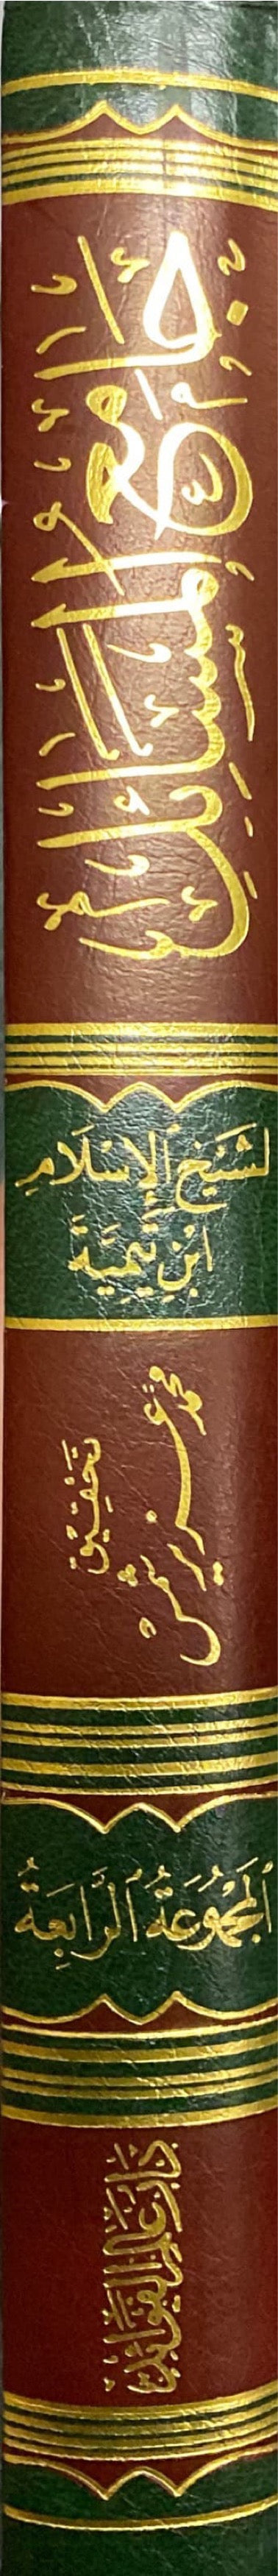 جامع المسائل Jami Al Masaail (Volume 4)